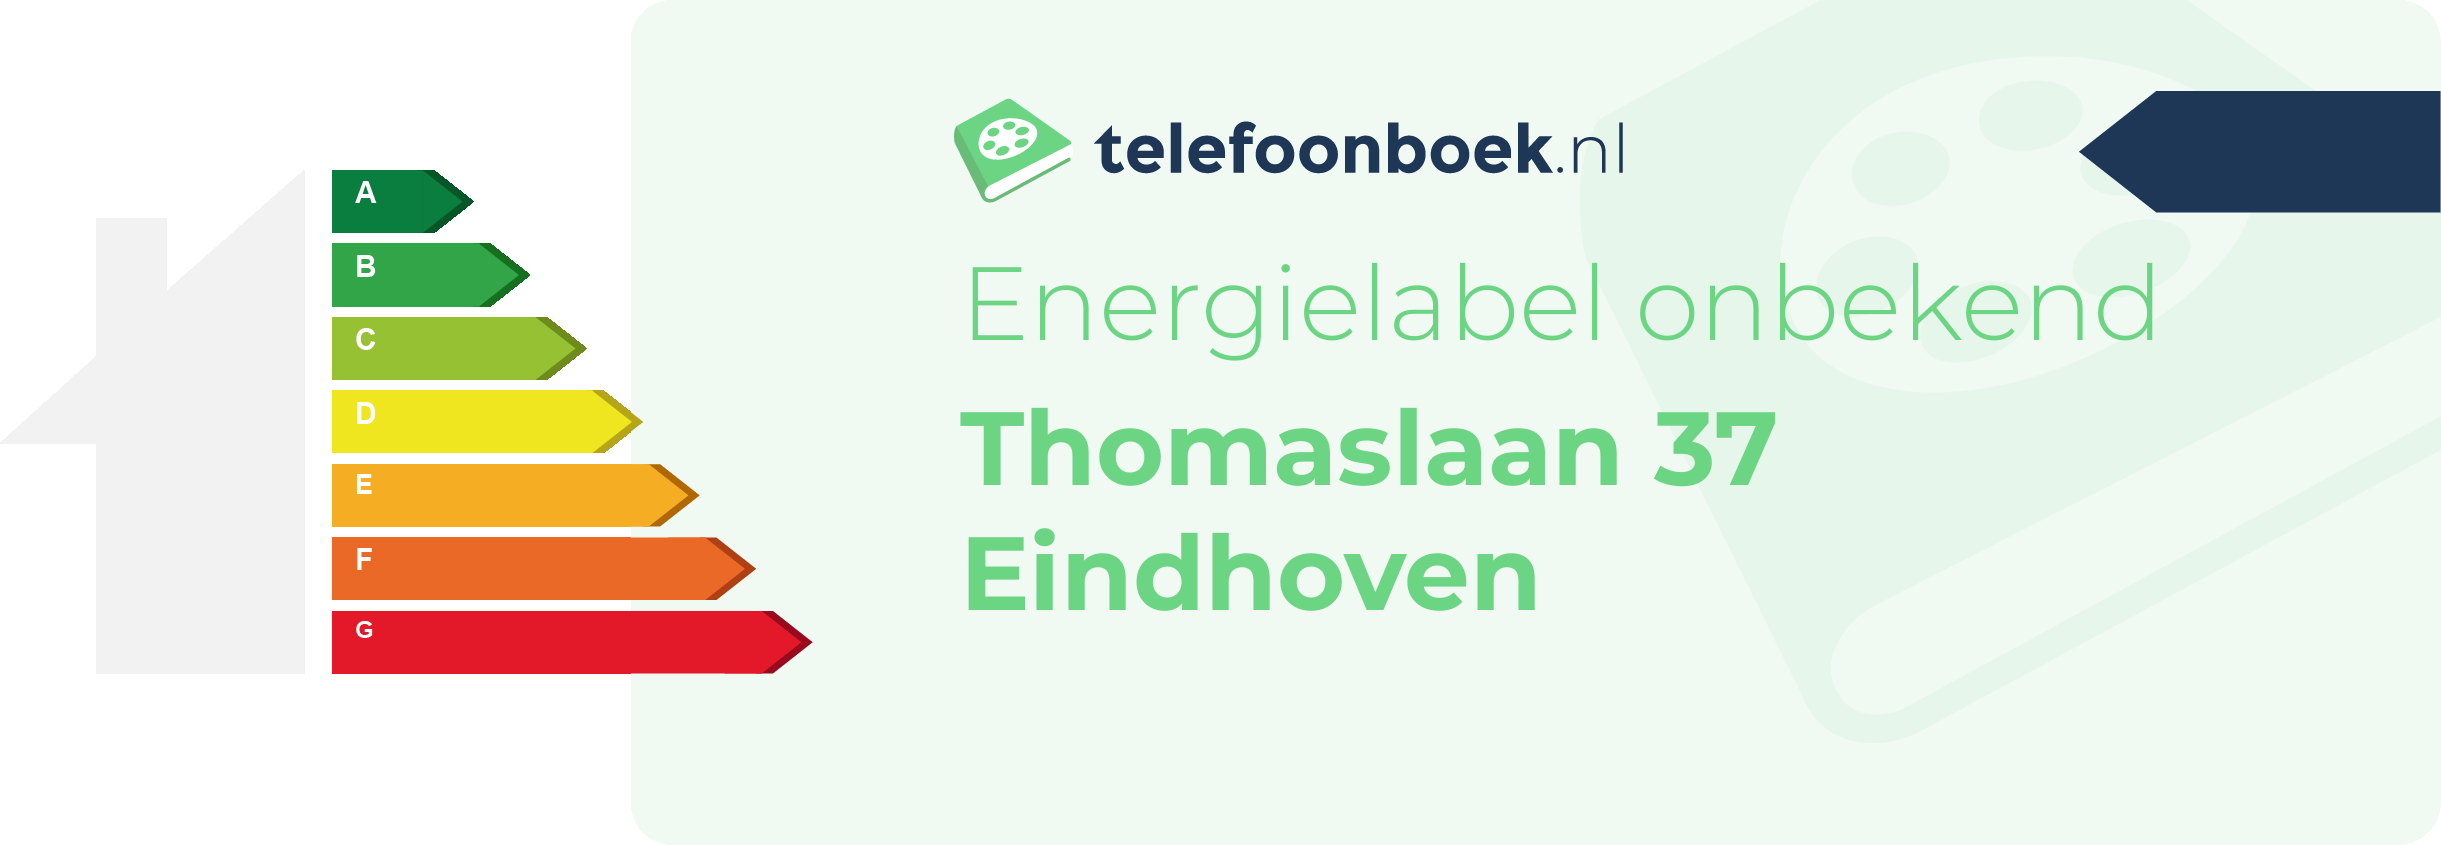 Energielabel Thomaslaan 37 Eindhoven